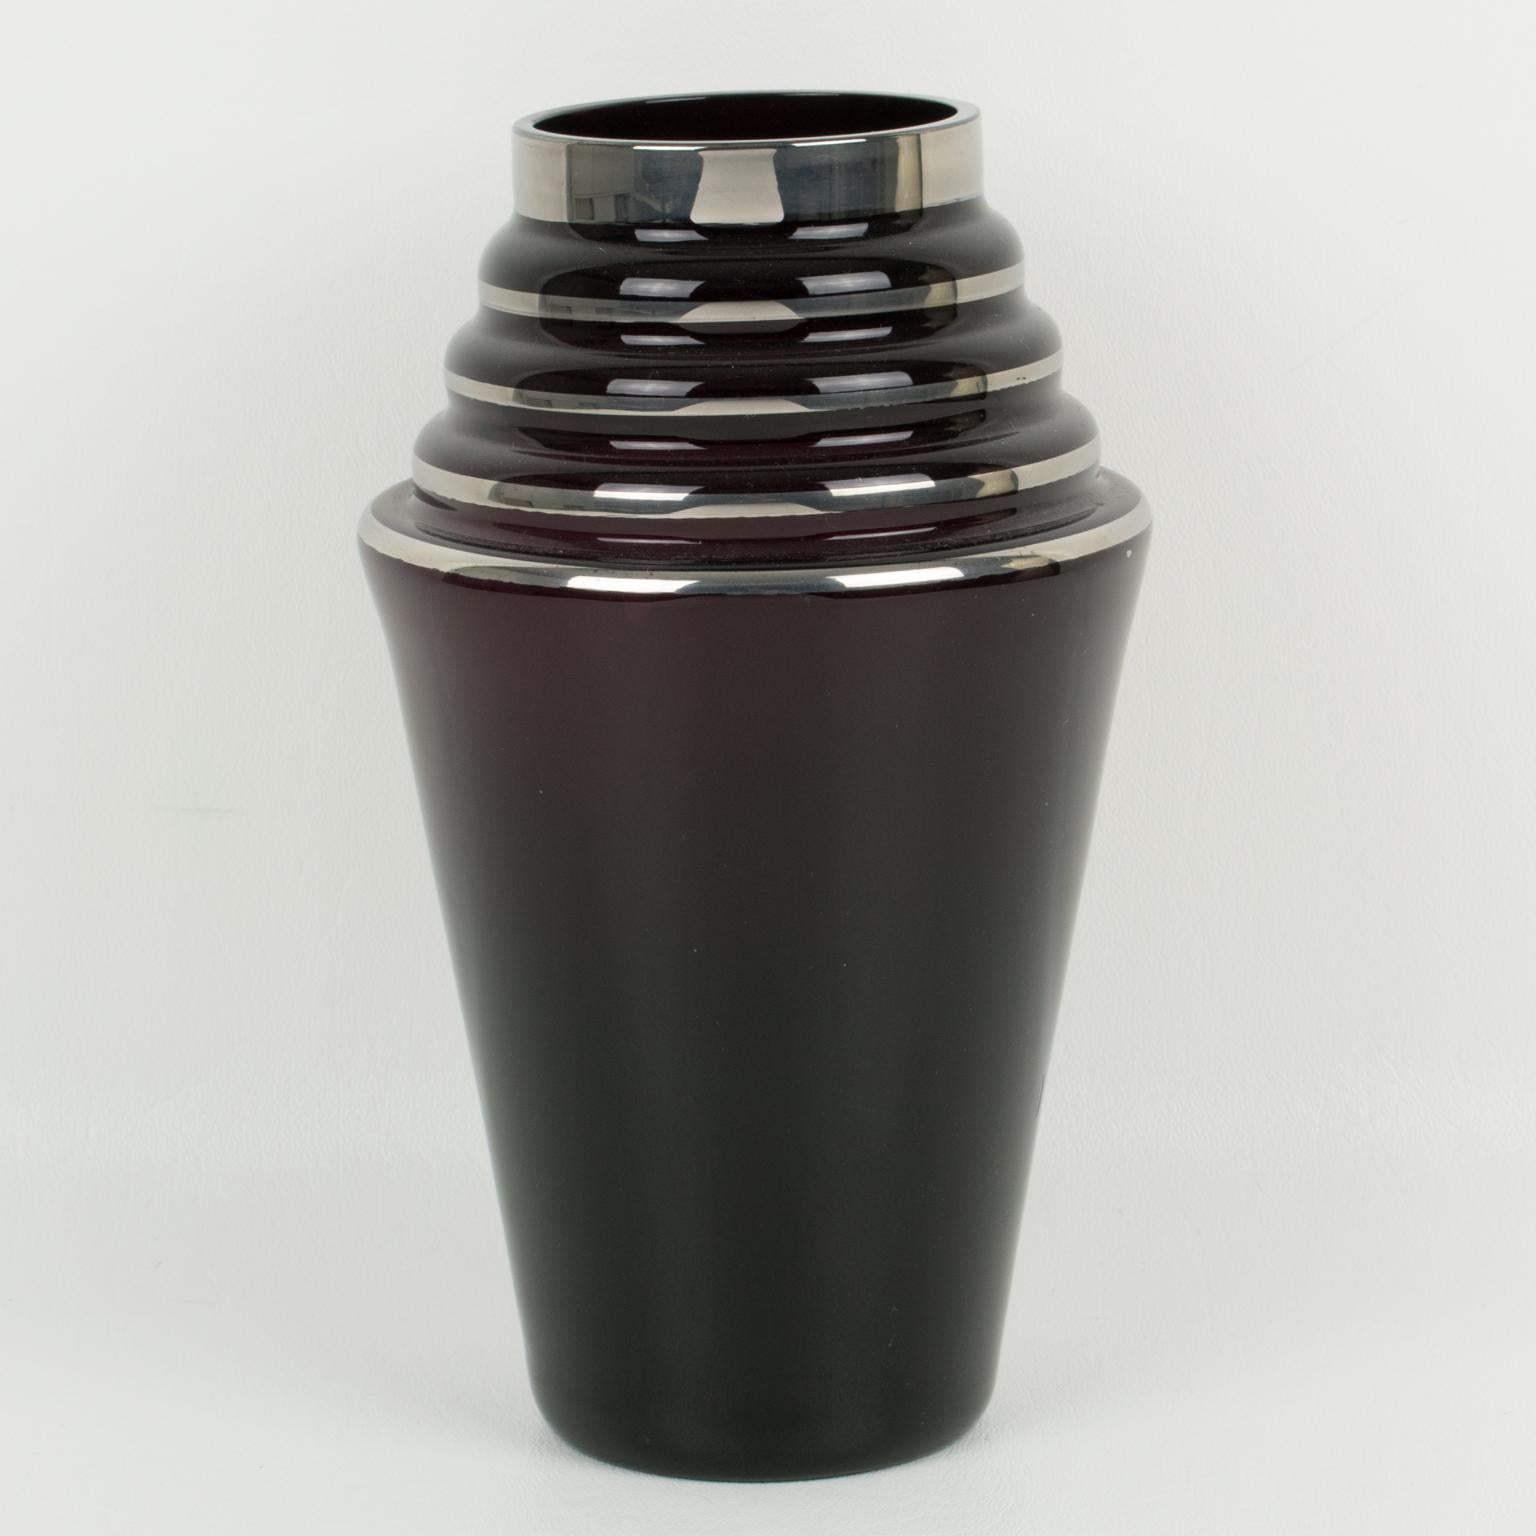 Ce joli vase en verre noir Art déco français des années 1930 est décoré d'un dépôt d'argent sur tout le pourtour avec des motifs géométriques. Veuillez noter que, bien que l'on parle généralement de 